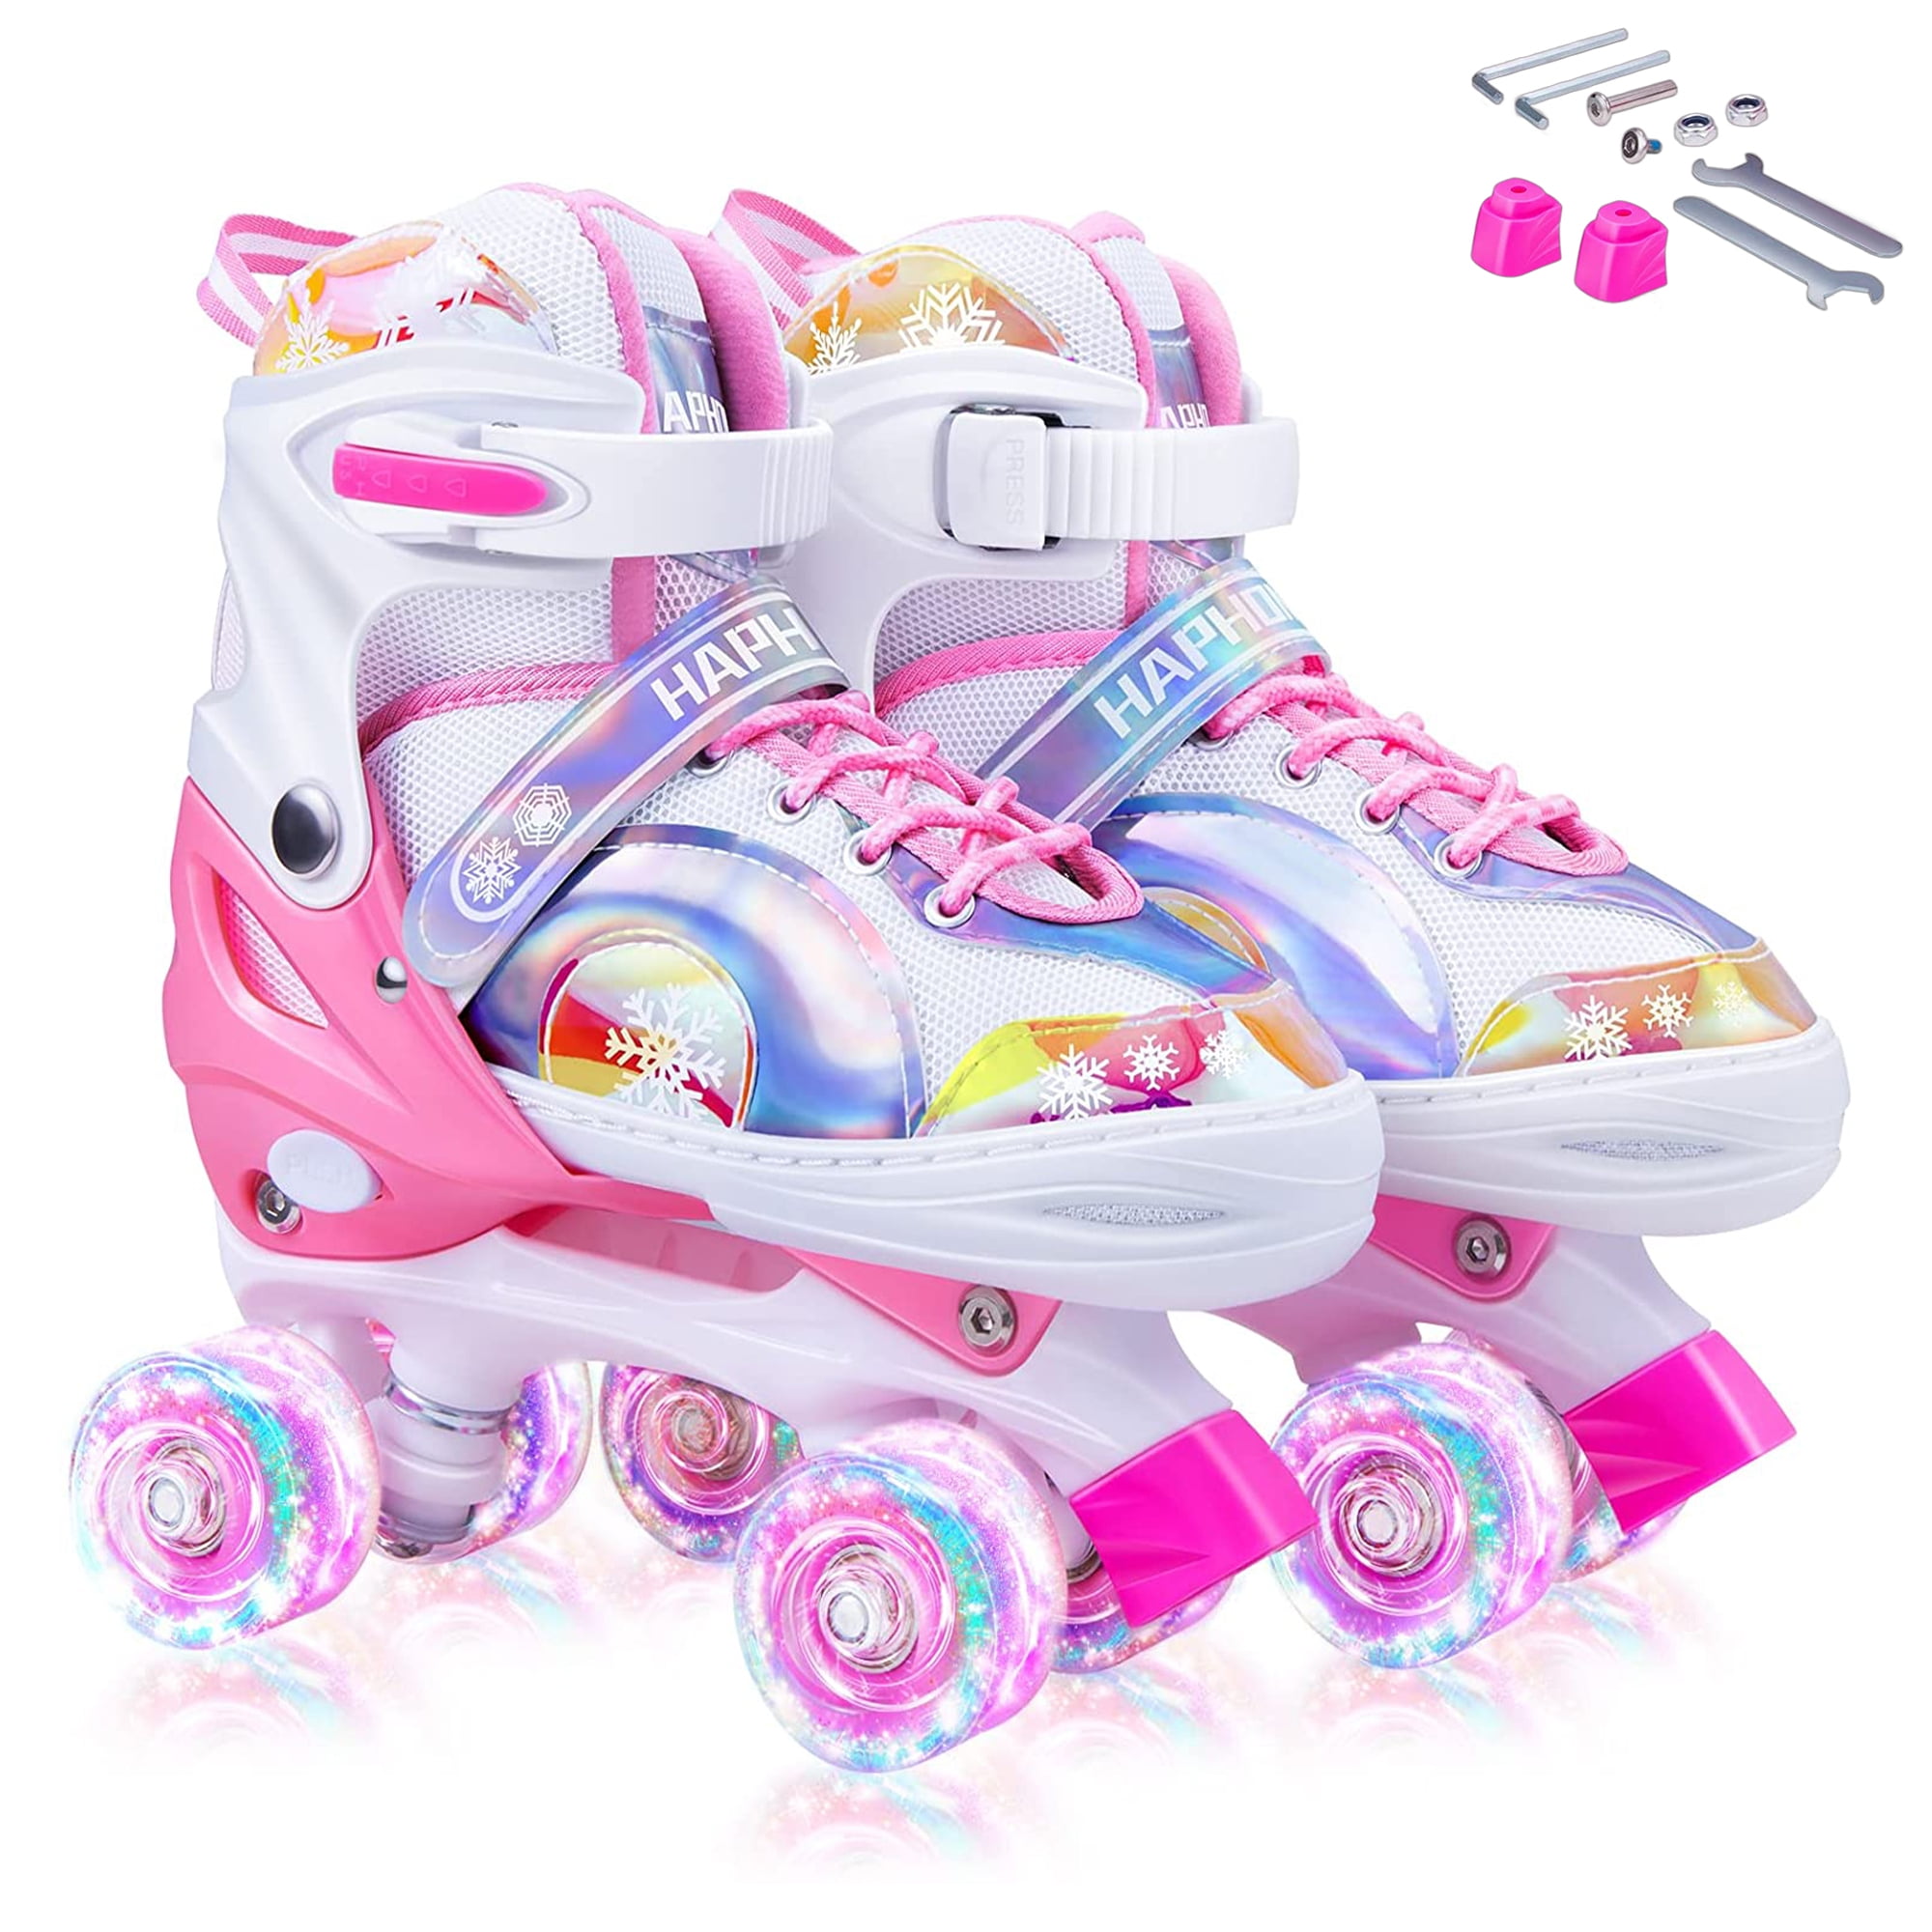 Kids Inline Skates Adjustable Safe Illuminating Wheel Roller Skates Size S Pink 